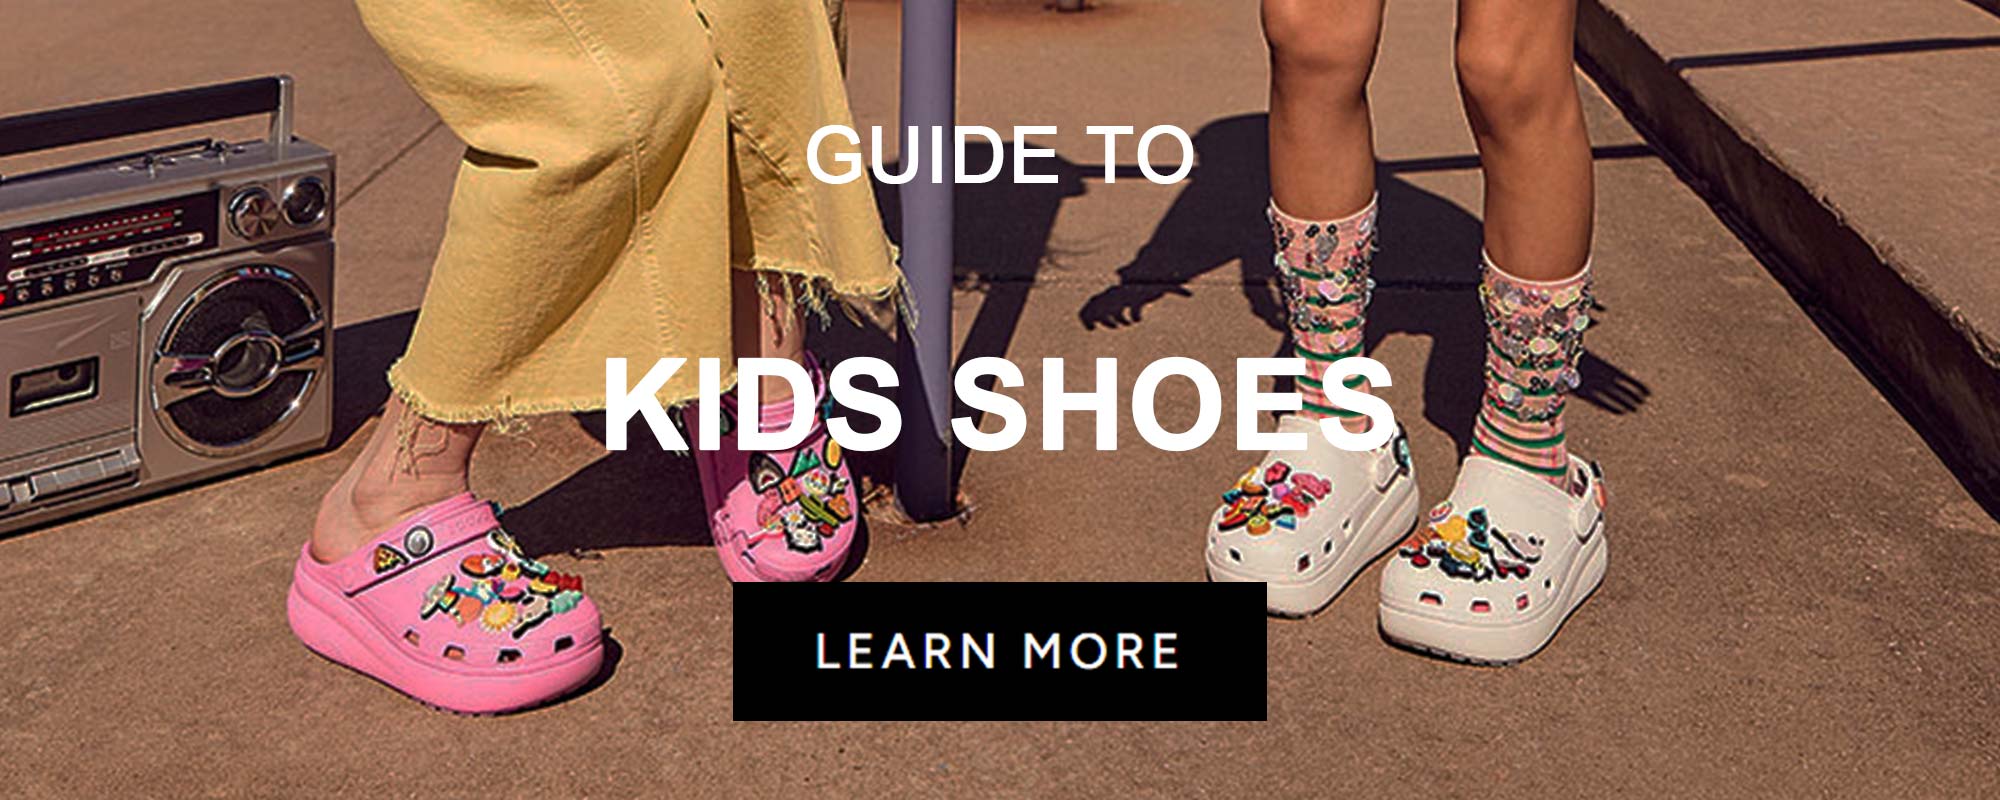 GUIDES_FOOTWEAR_KidsShoes.jpg